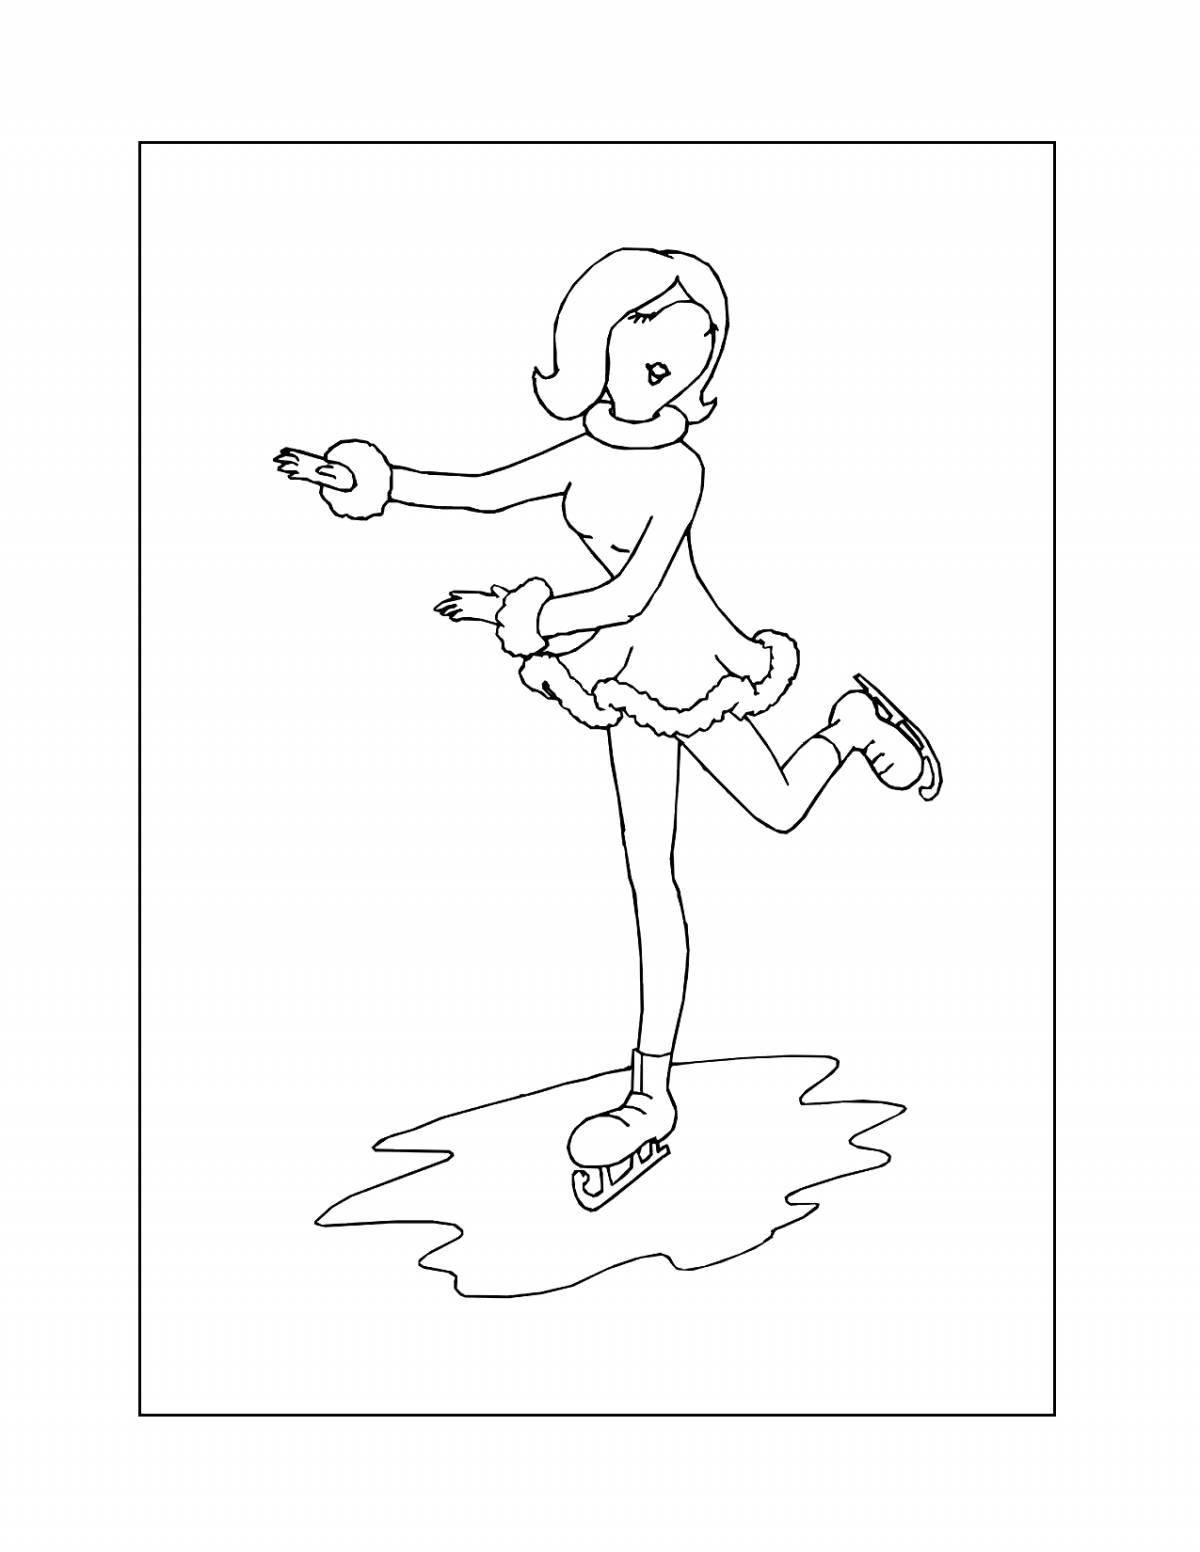 Fun coloring figure skater girl